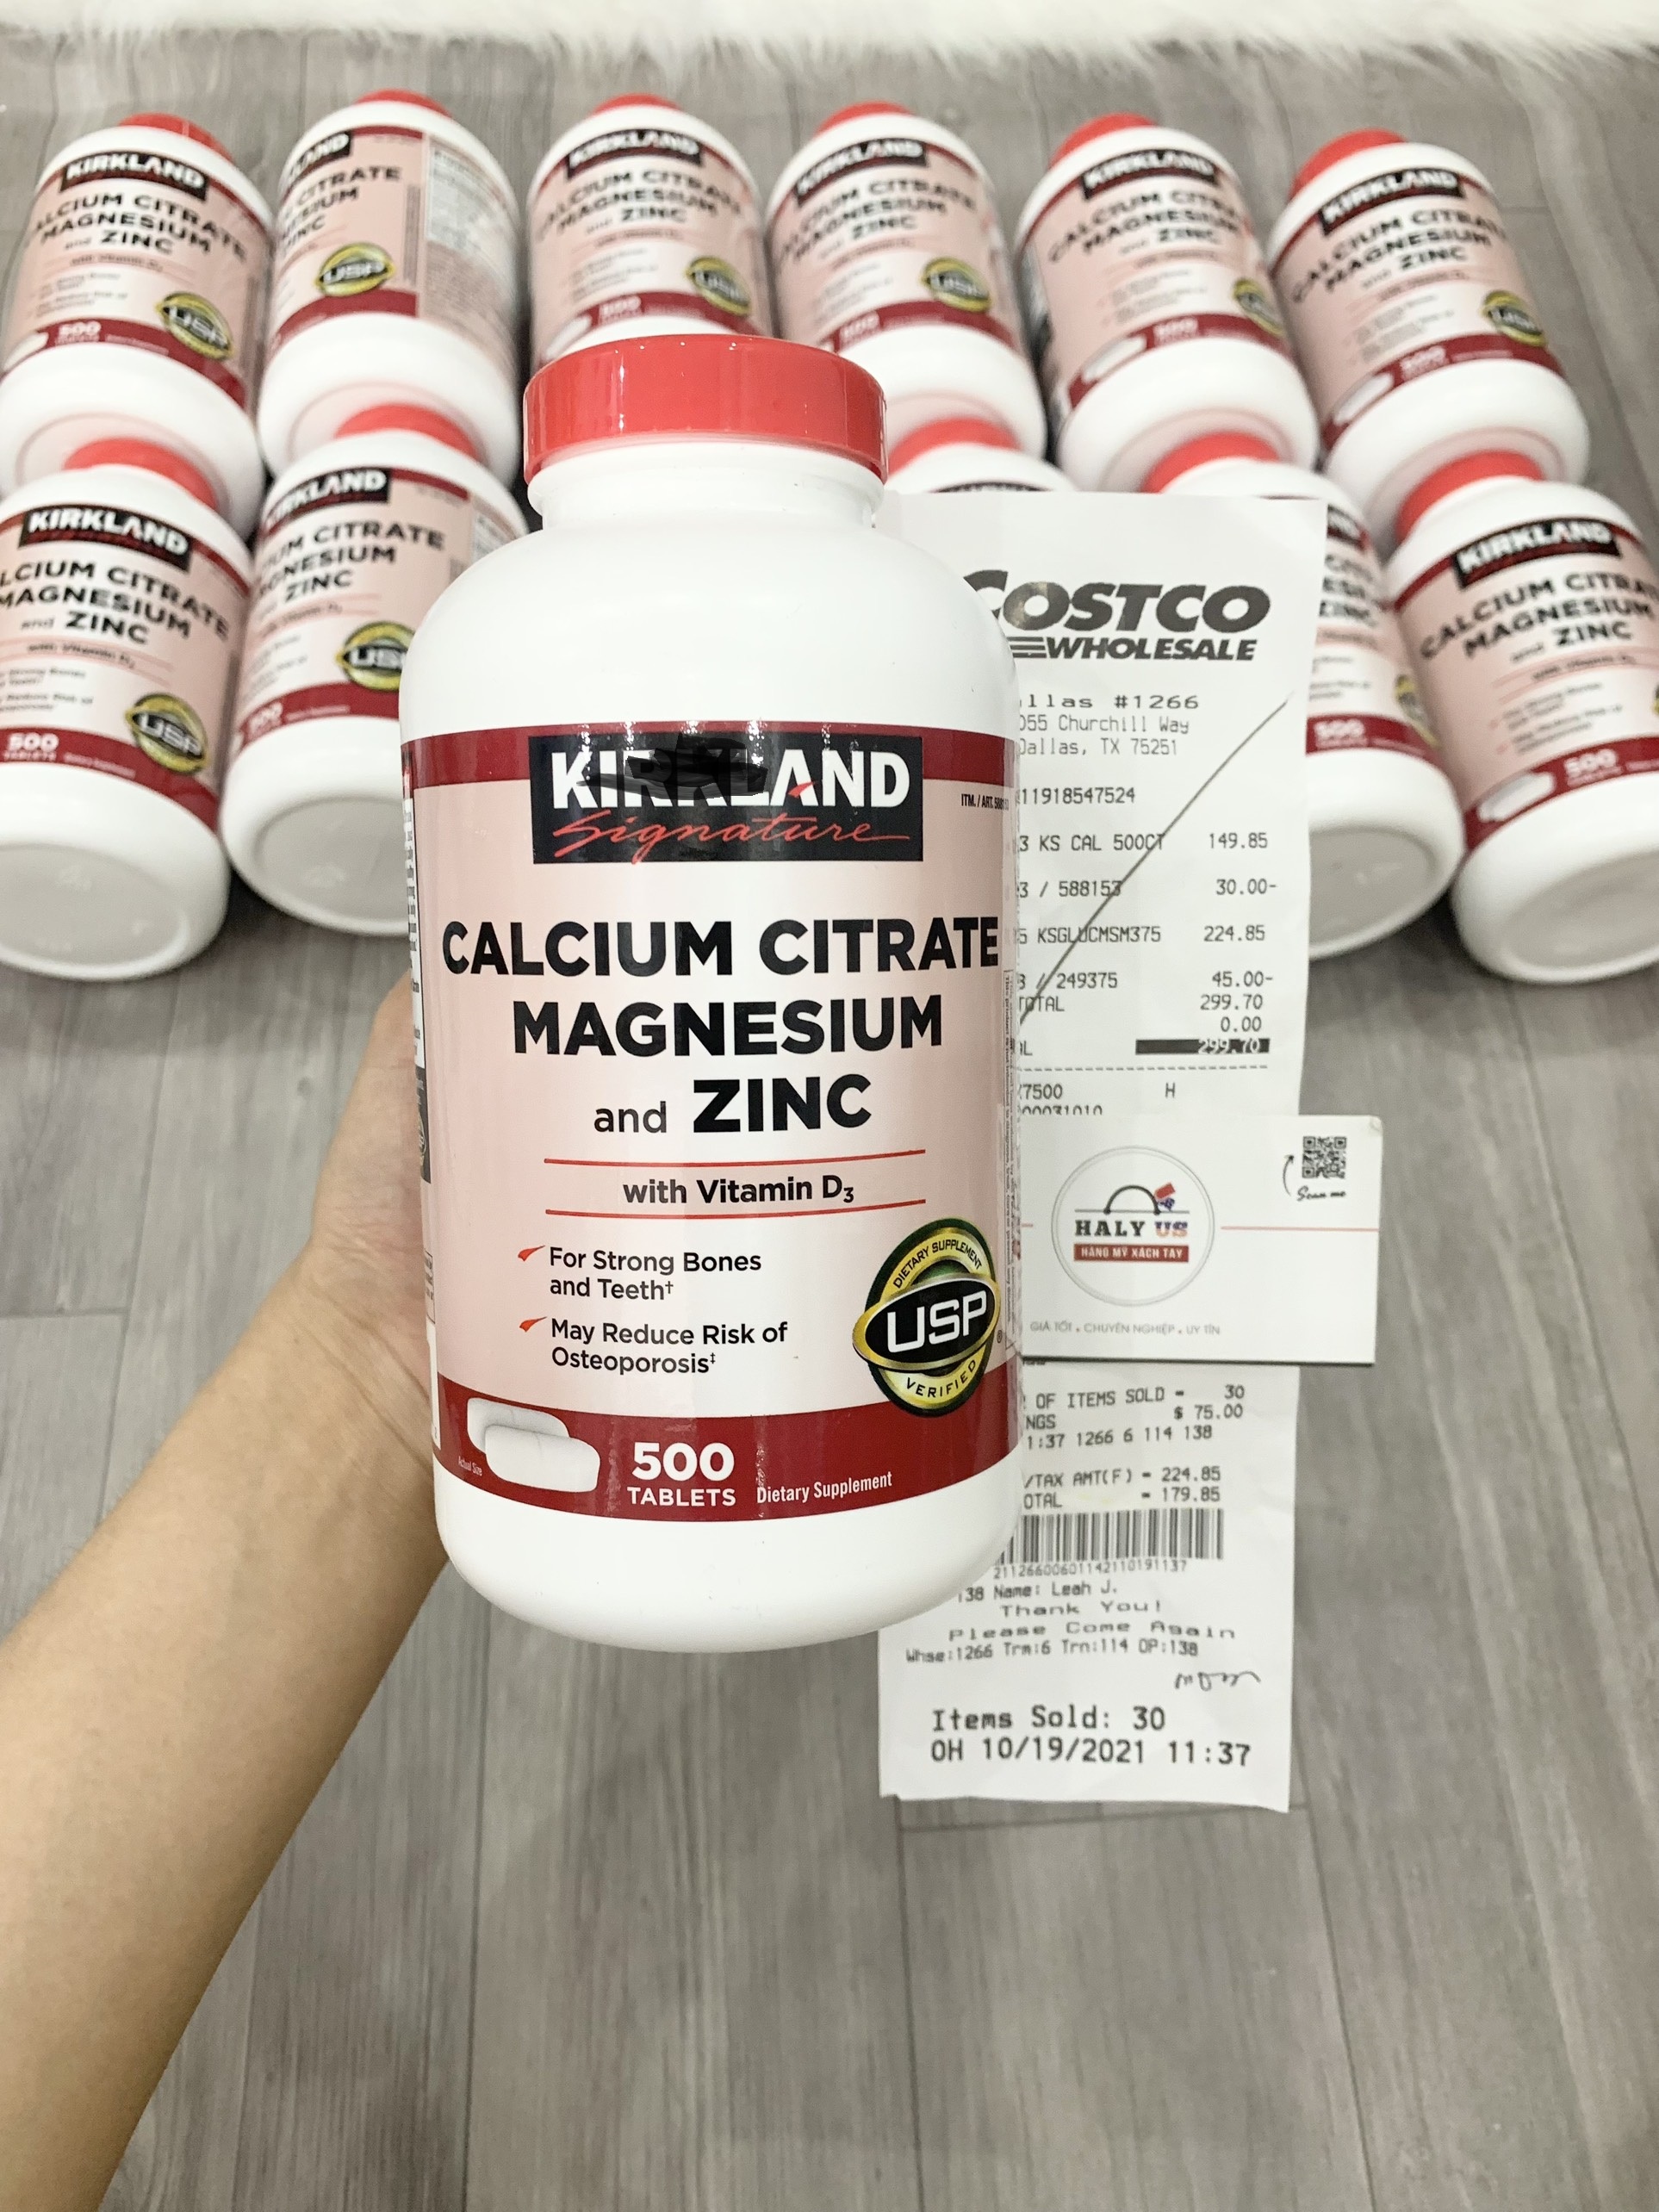 Viên Uống Bổ Sung Canxi cho xương chắc khỏe Kirkland Calcium Citrate Magnesium and ZinC 500 Viên